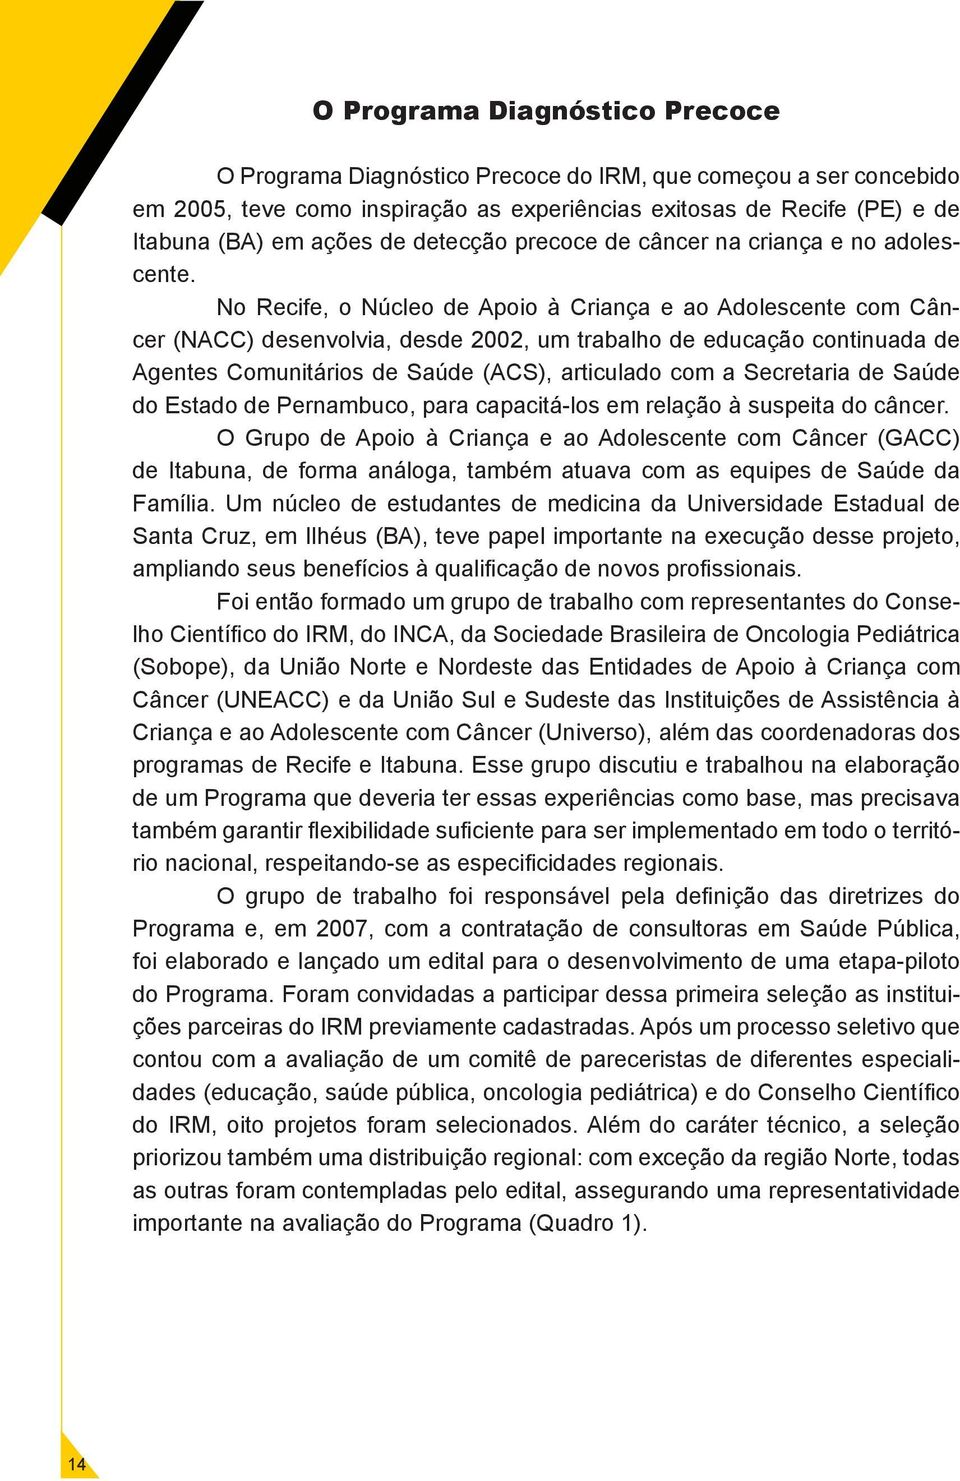 No Recife, o Núcleo de Apoio à Criança e ao Adolescente com Câncer (NACC) desenvolvia, desde 2002, um trabalho de educação continuada de Agentes Comunitários de Saúde (ACS), articulado com a